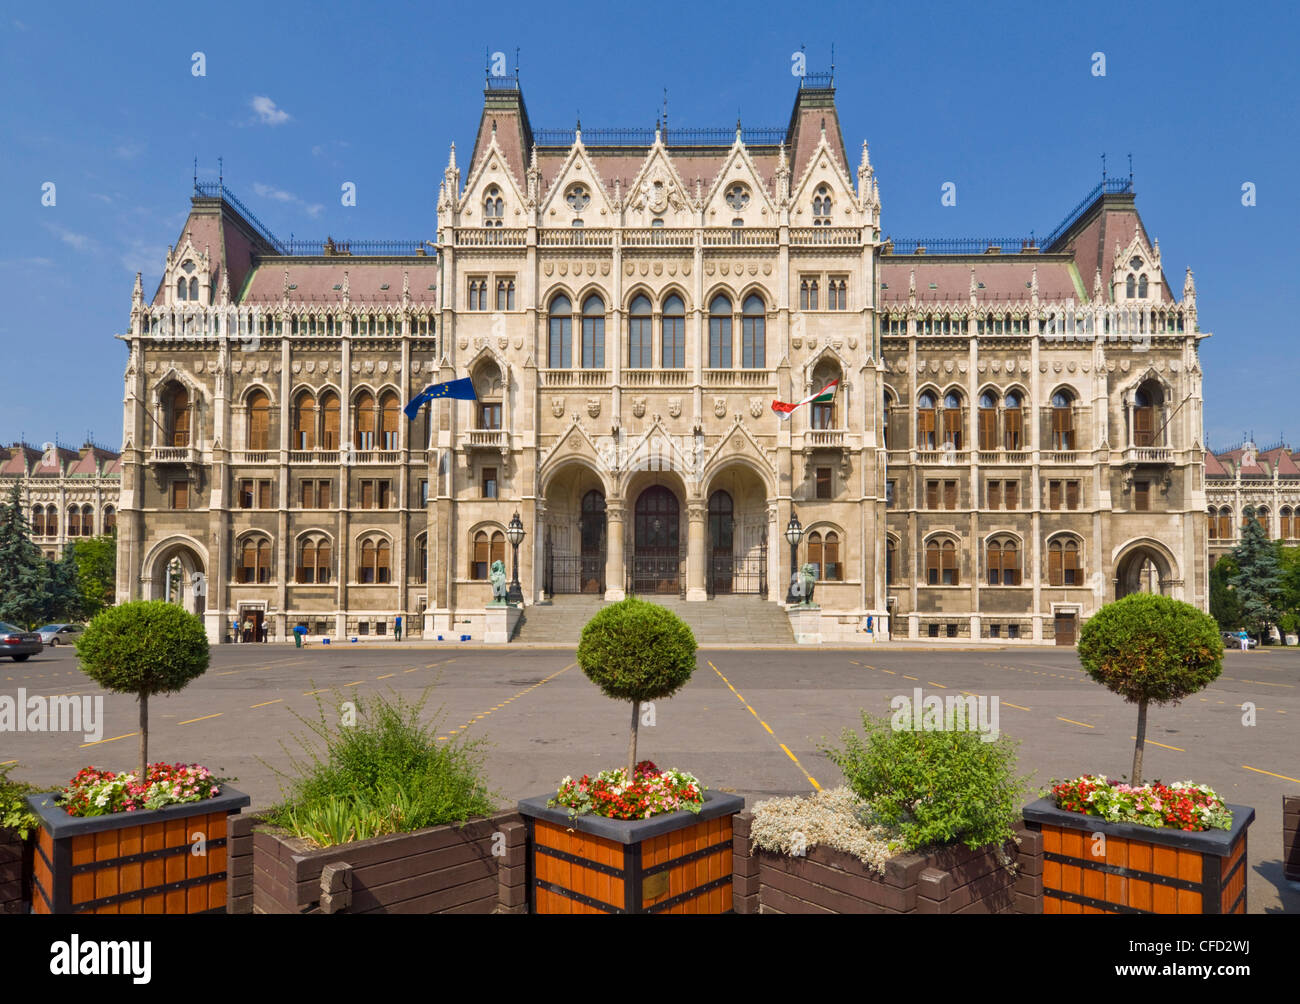 Entrée principale de l'édifice néo-gothique du Parlement hongrois, conçu par Imre Steindl, datant de 1902, Budapest, Hongrie Banque D'Images